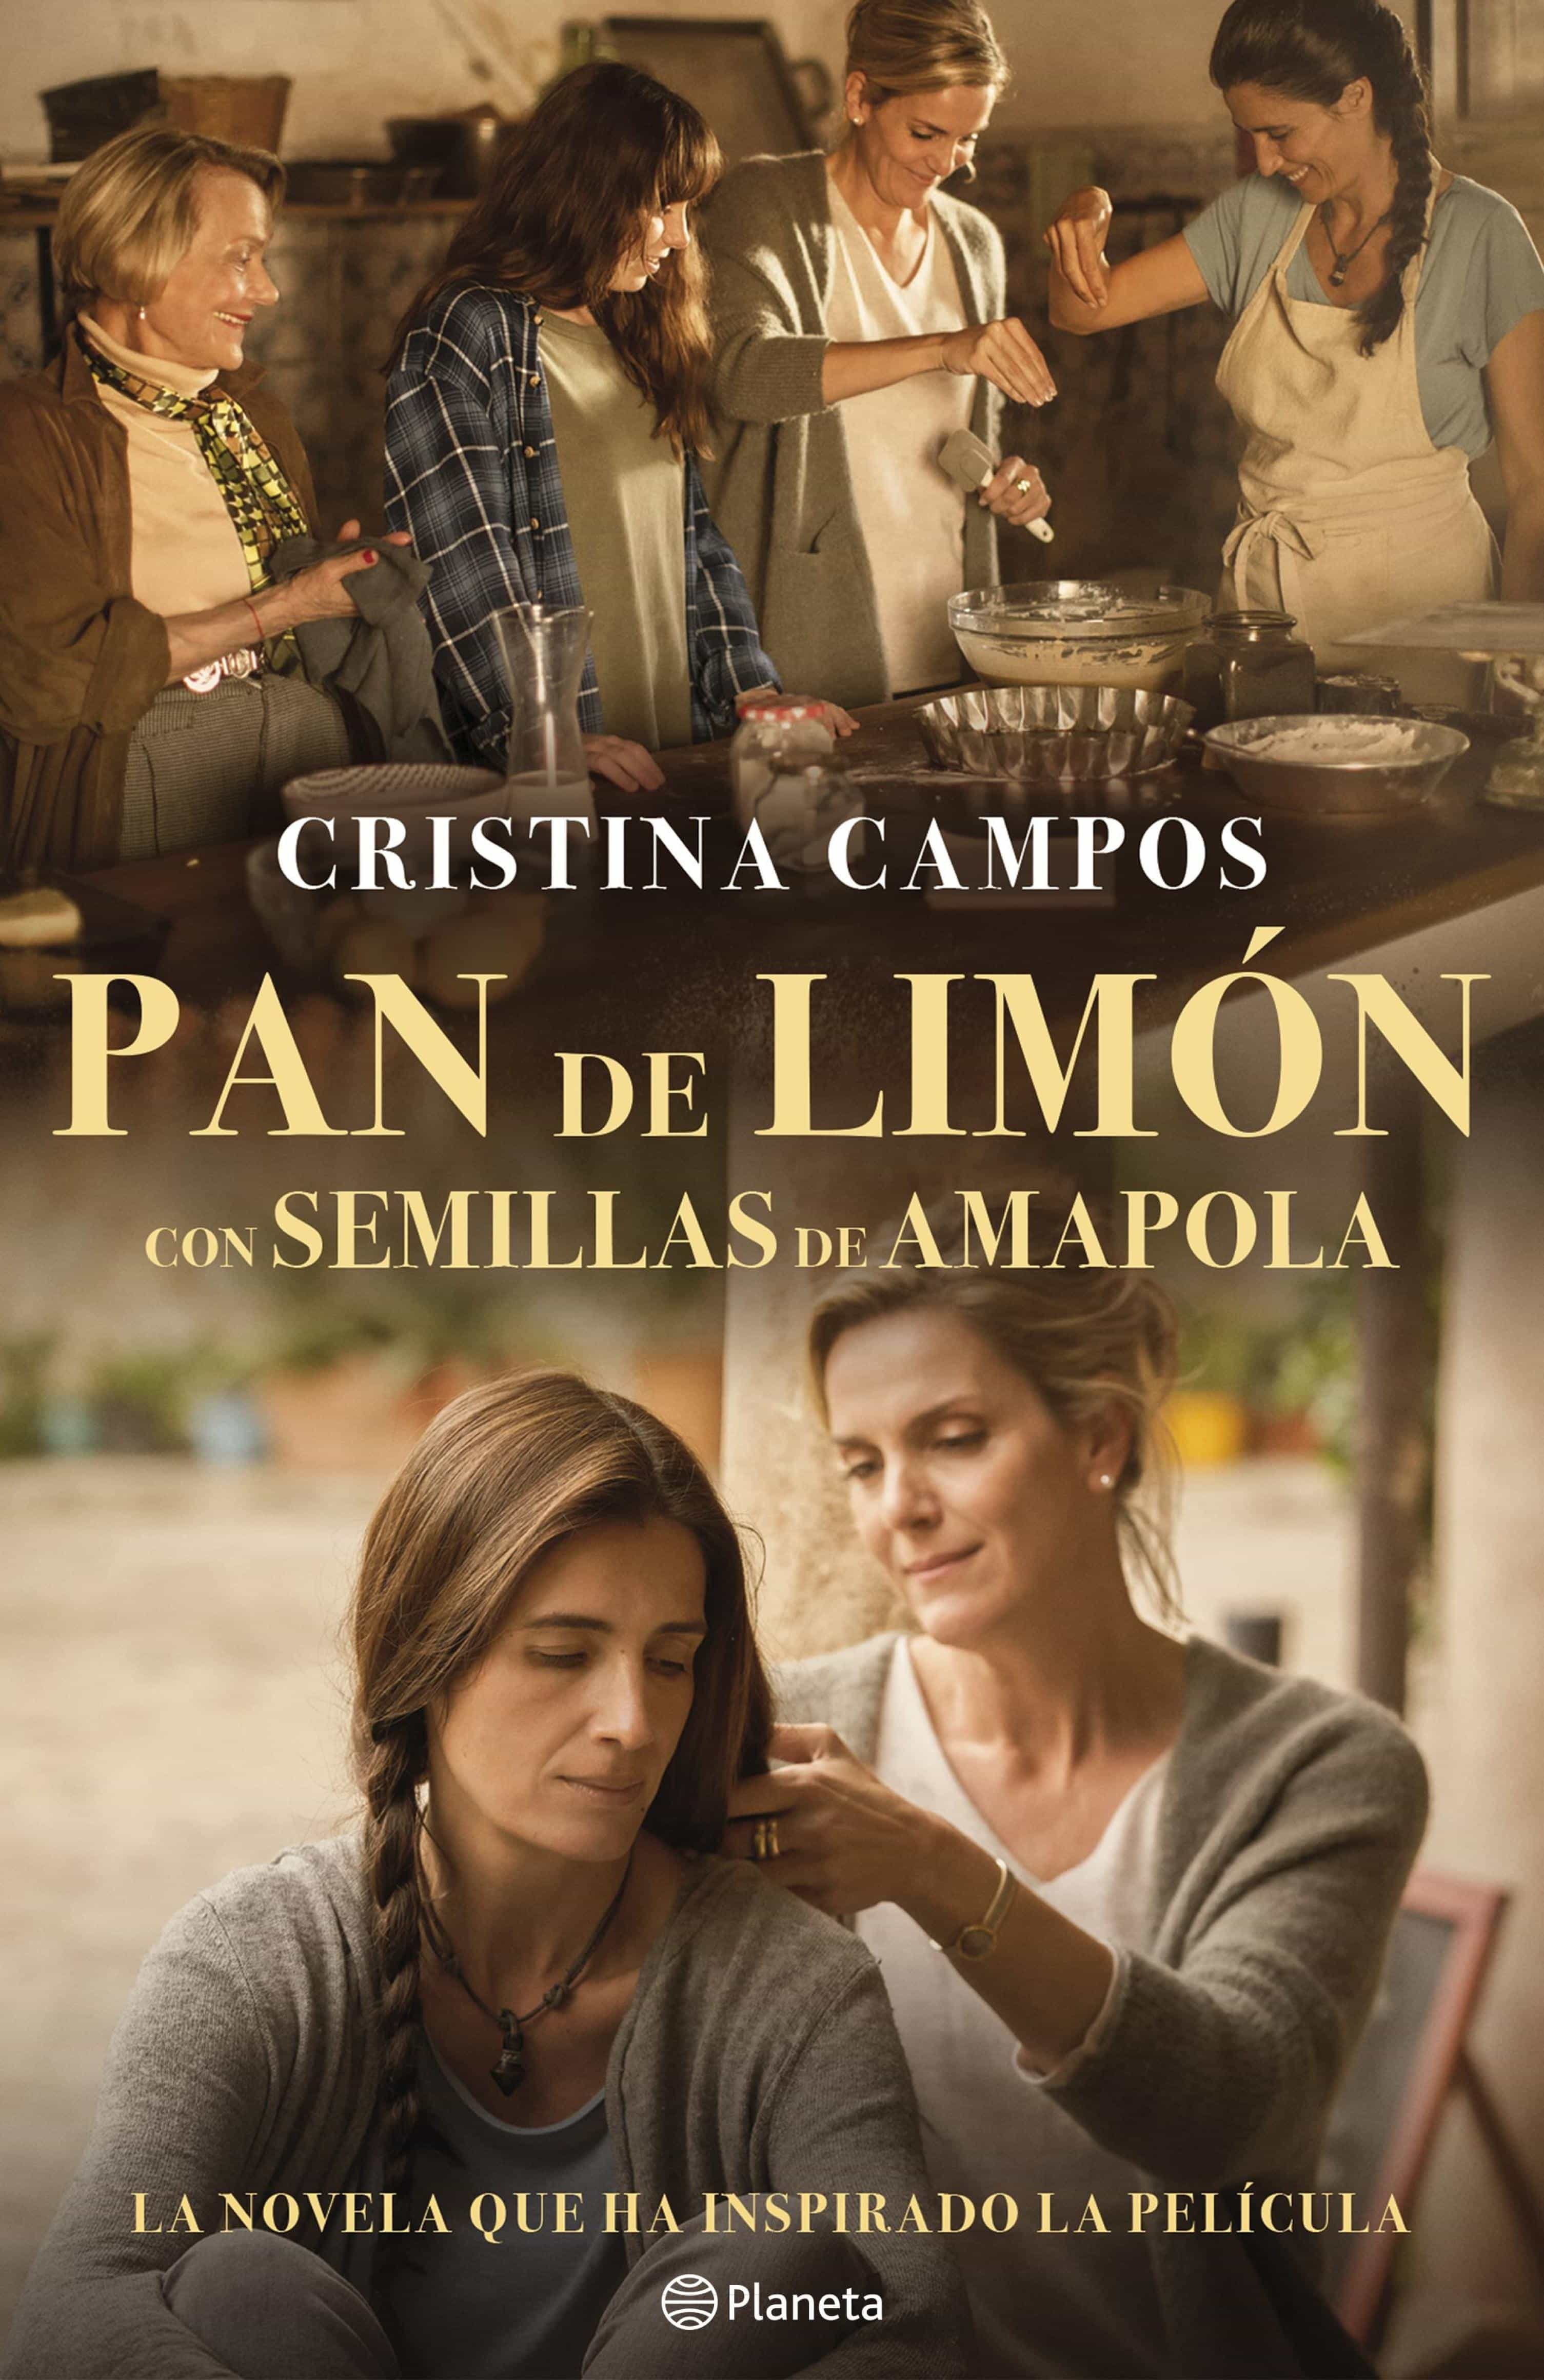 Contando con libros. "Pan de limón con semillas de amapola" de Cristina Campos.